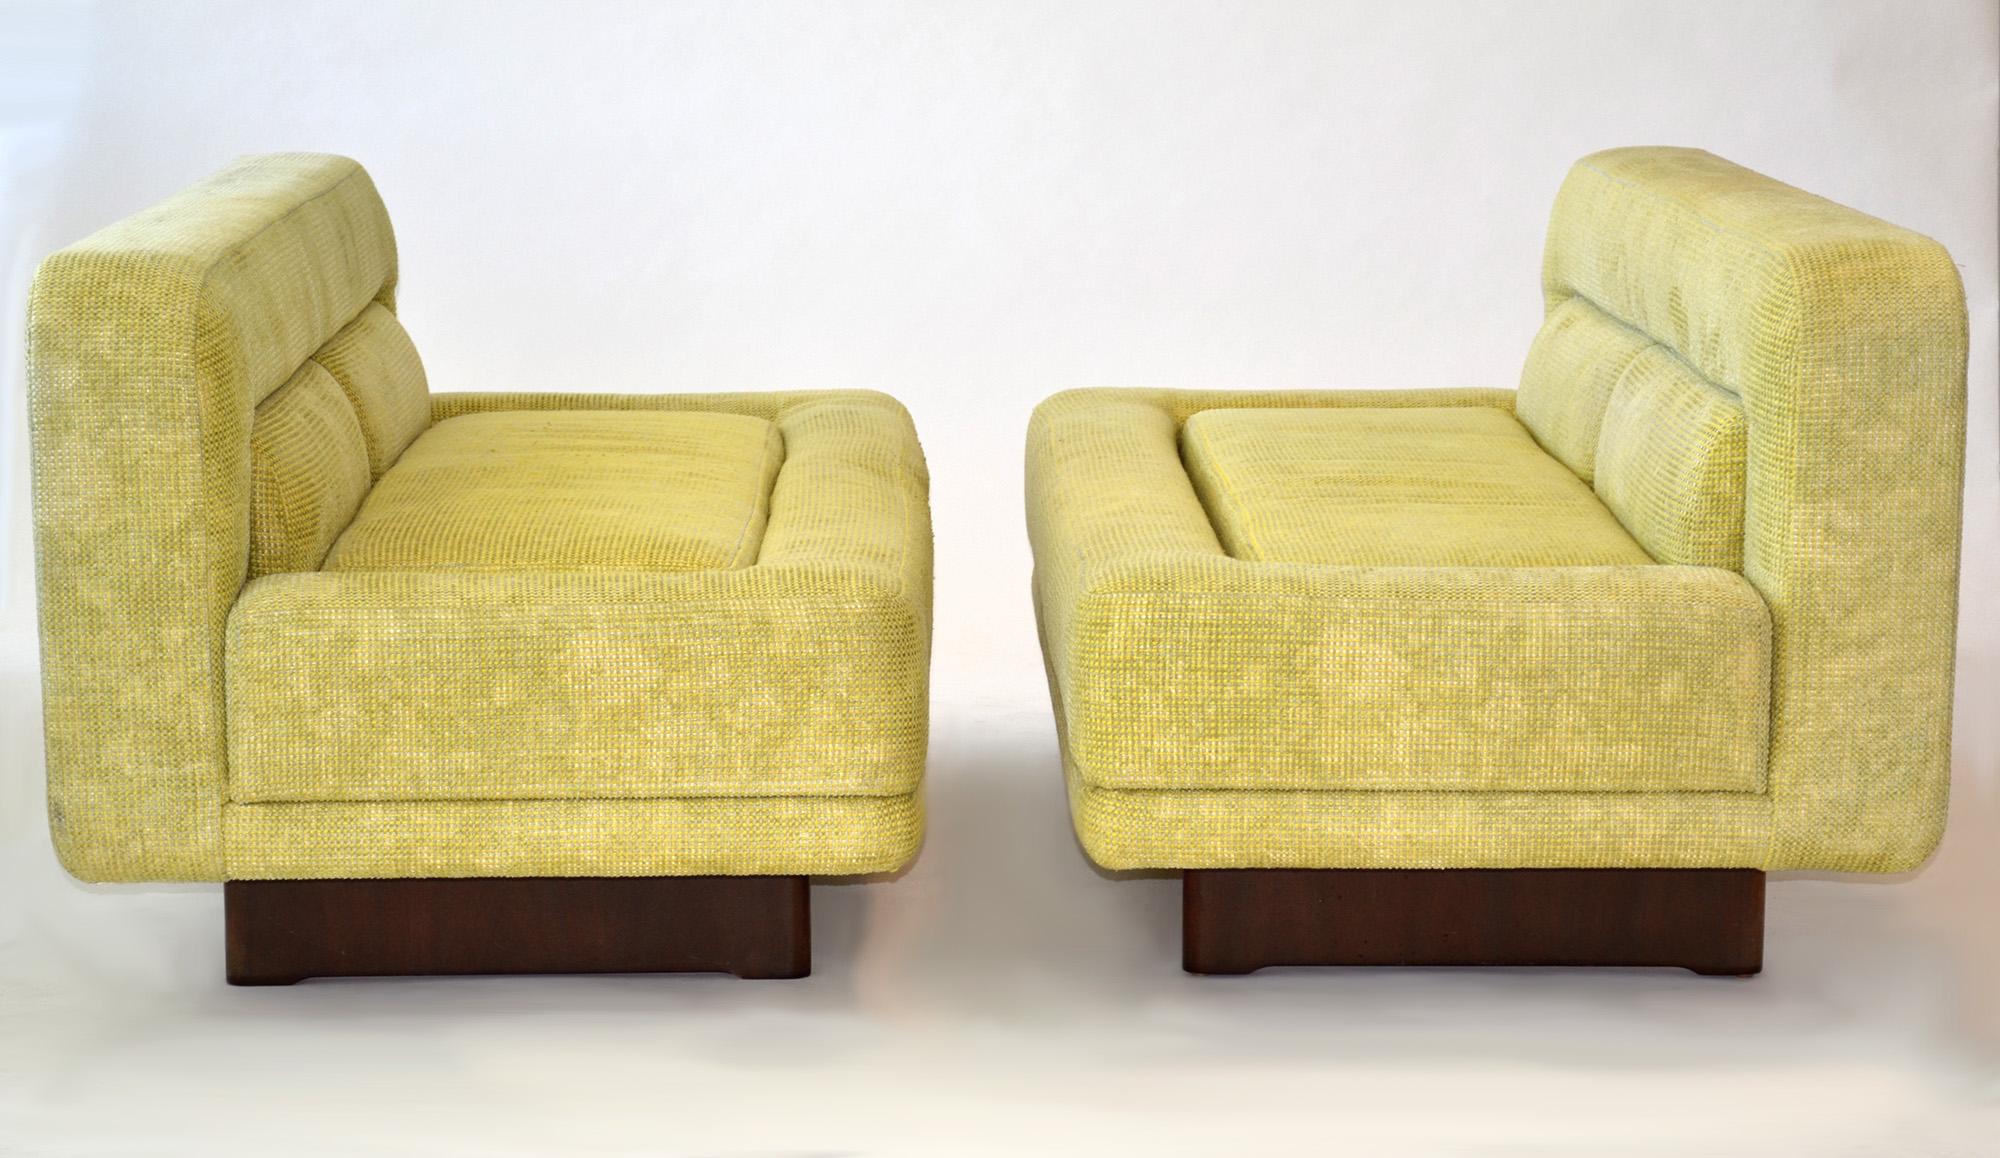 Seltenes Paar Vladimir Kagan Designs Sofas / Loveseats 1970er Jahre
Frühe, seltene Garnitur passender gepolsterter Sofas, Sessel oder Sofas auf charakteristischen Kagan-Holzgestellen. Entworfen als eine maßgeschneiderte, futuristische,